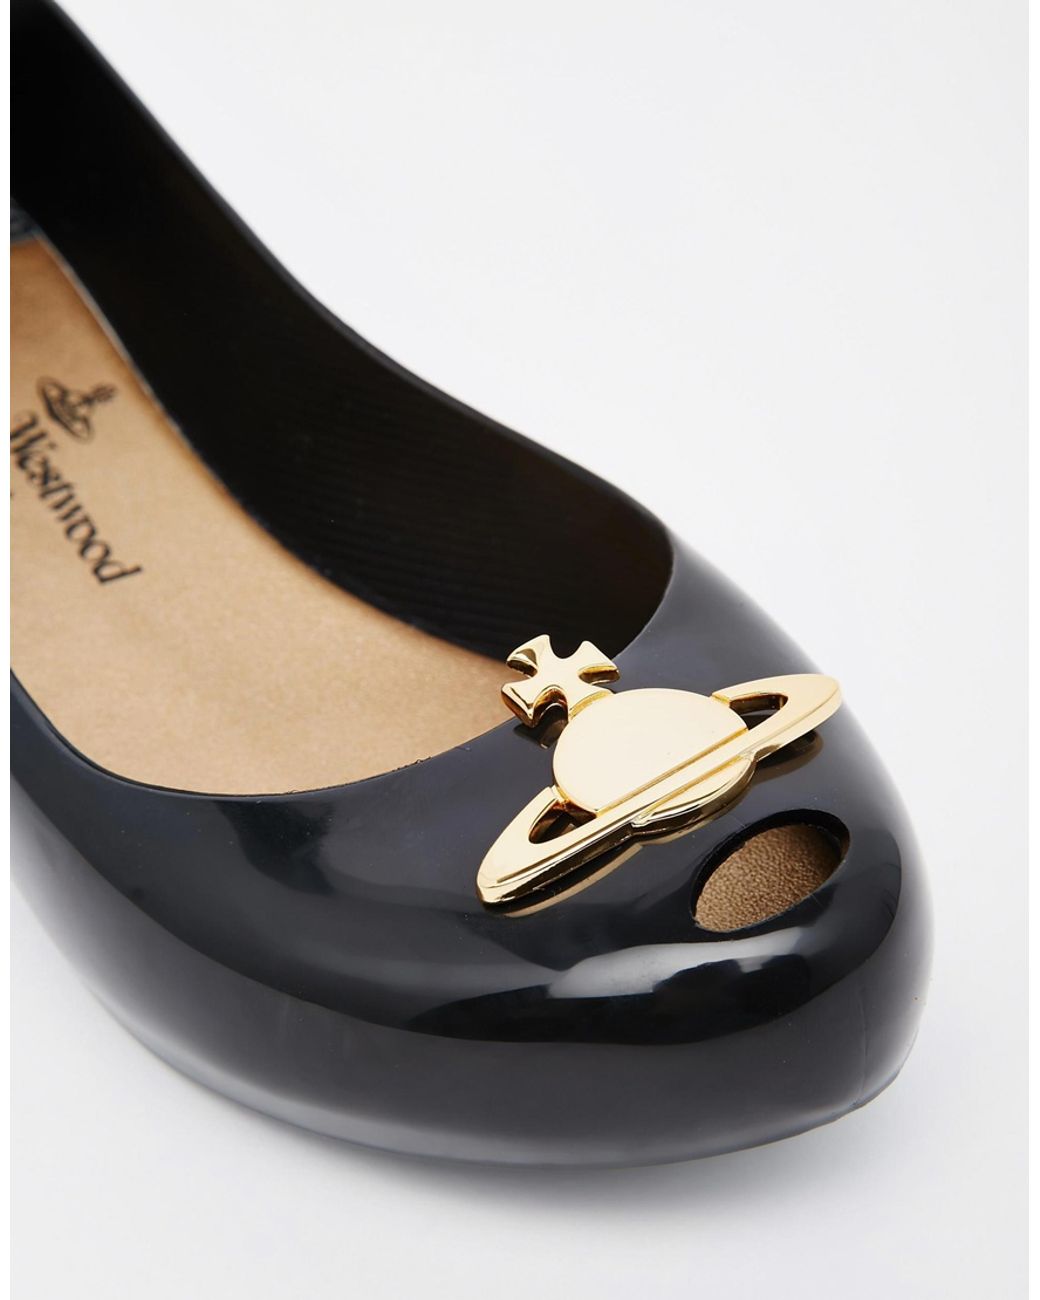 Forberedende navn faktor Champagne Vivienne Westwood For Melissa Ultragirl 14 Black Orb Flat Shoes | Lyst